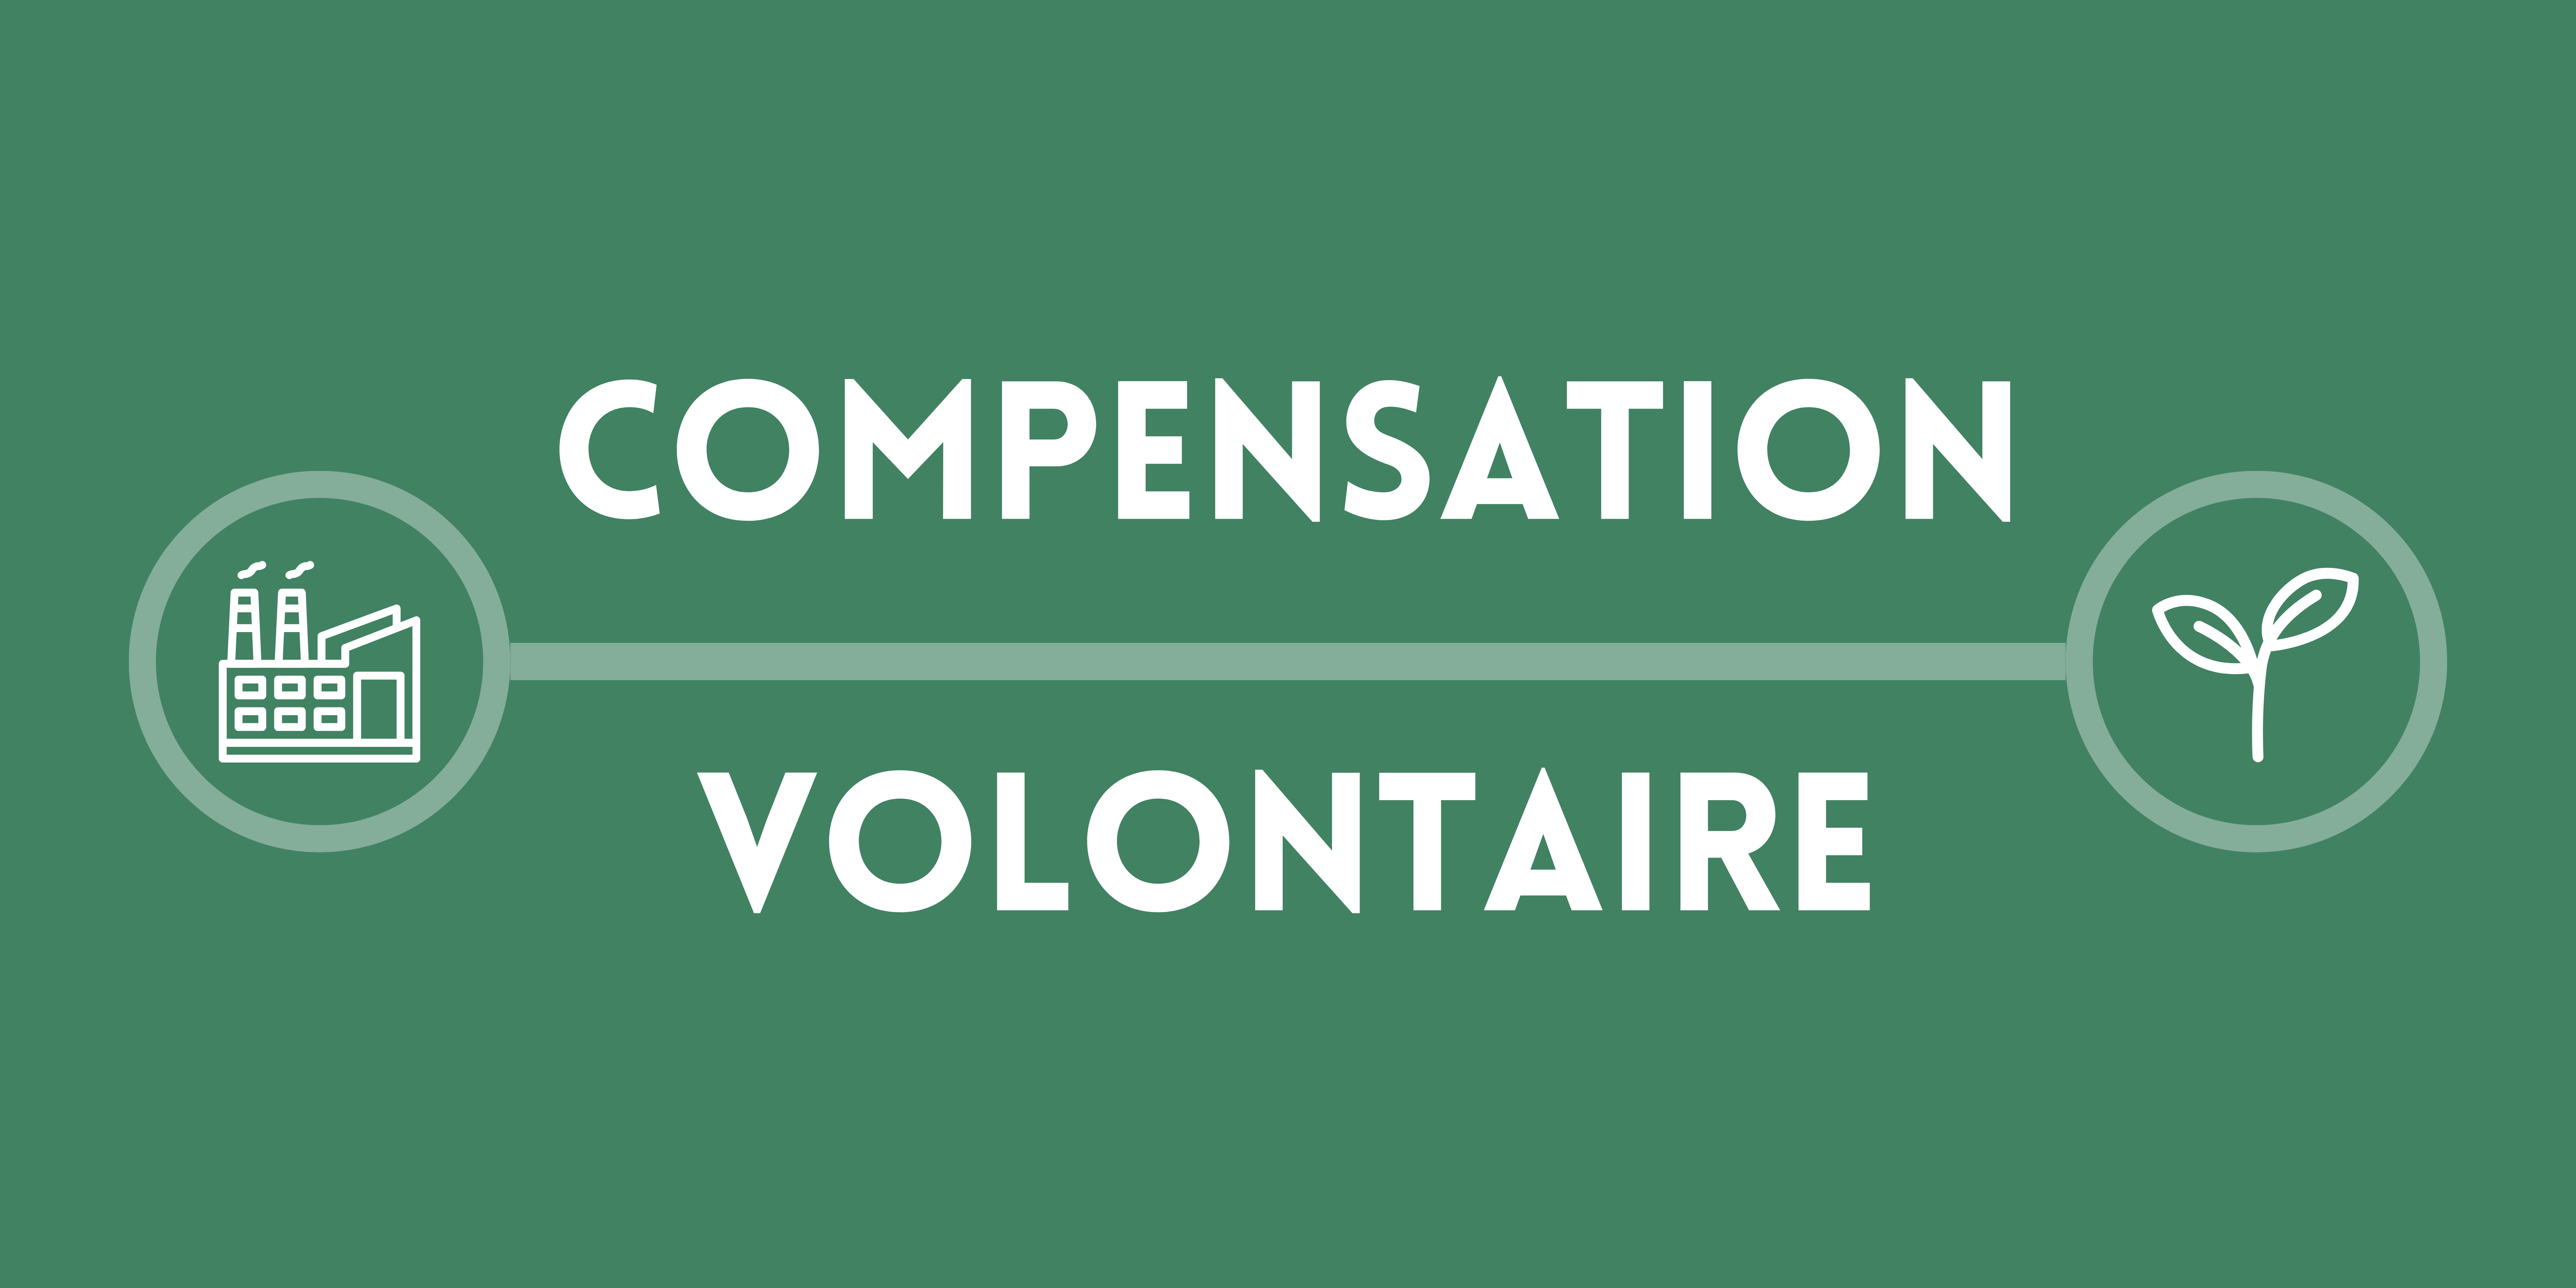 La compensation volontaire : quelles modalités juridiques ?